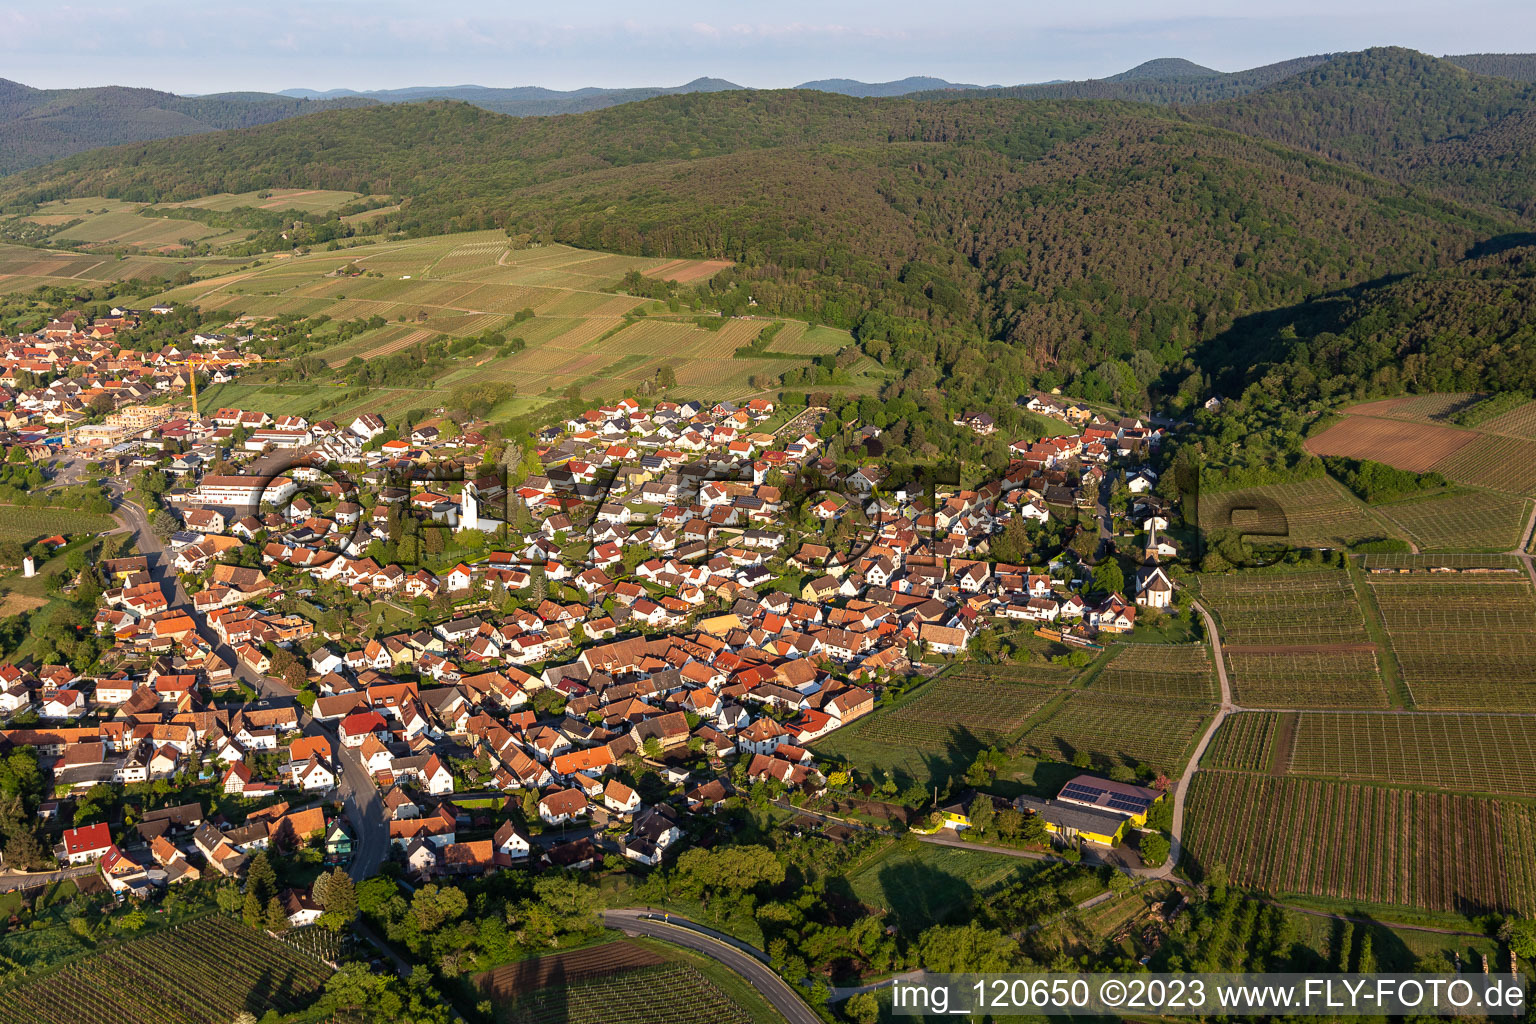 District Rechtenbach in Schweigen-Rechtenbach in the state Rhineland-Palatinate, Germany from the plane